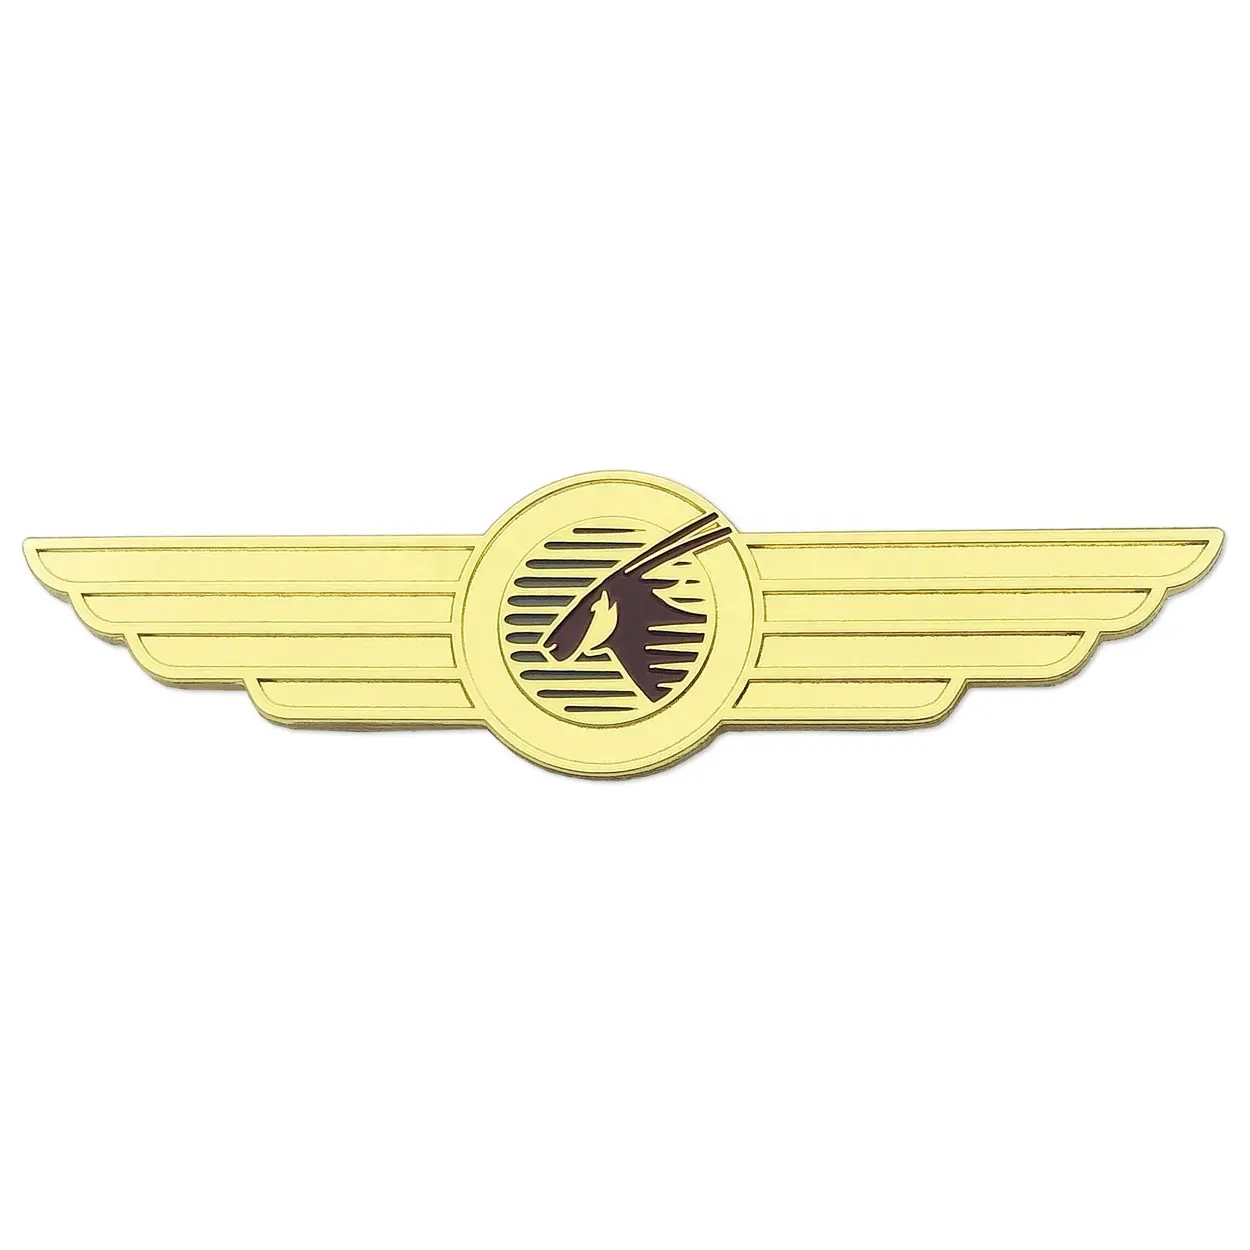 주문 금속 디자인 항공 아카데미 로고 상표 획uniform 날개 접어젖힌 옷깃 핀은 주물 비행가 의류 모자 기장 죽습니다